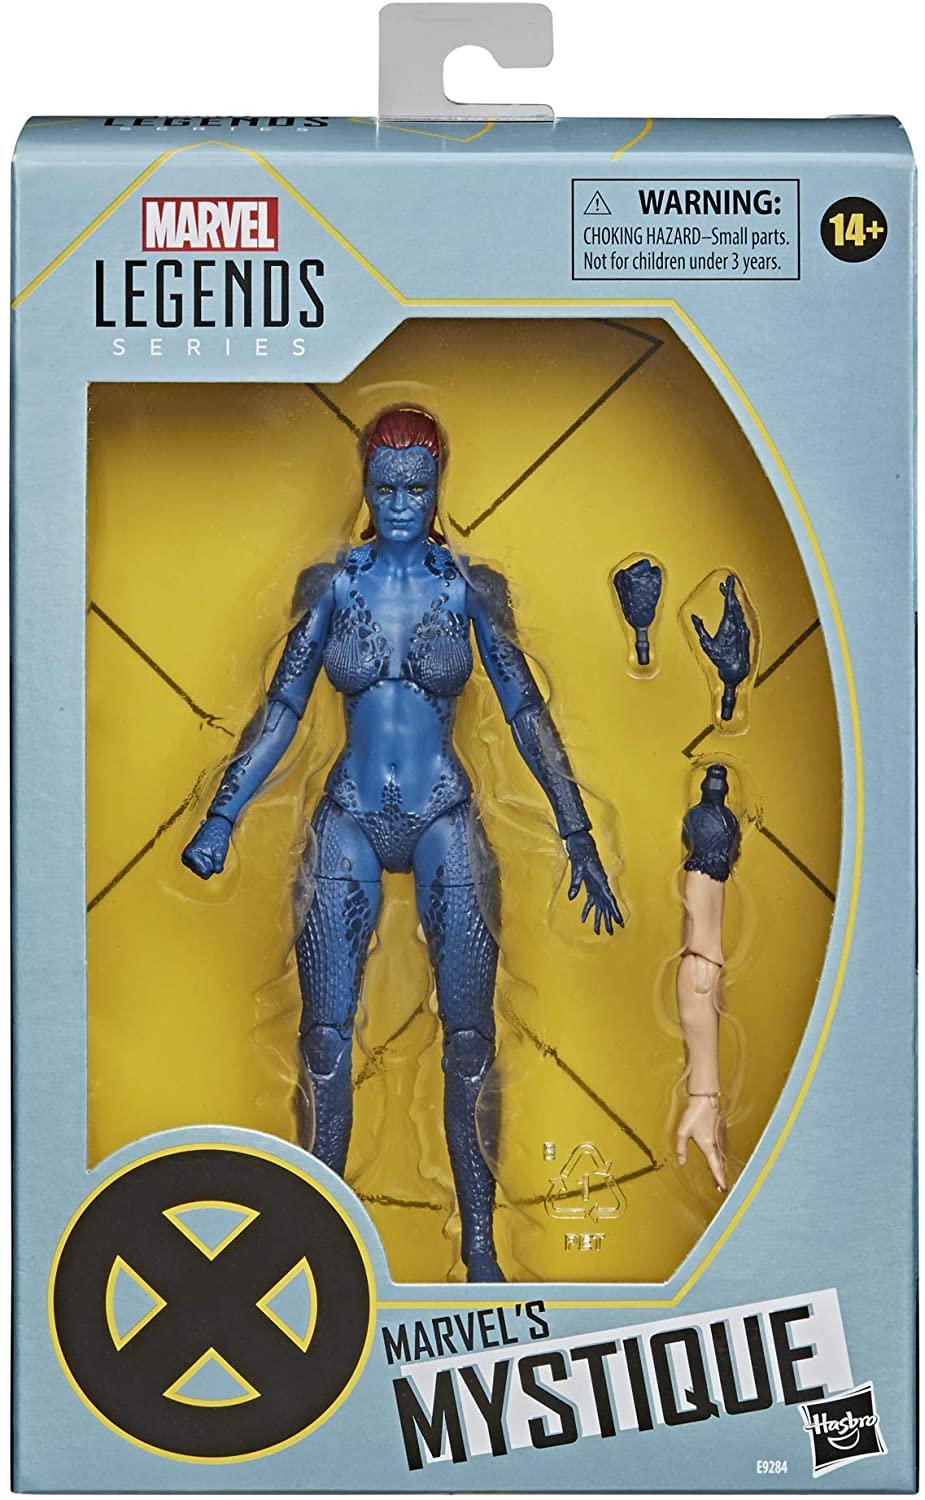 Marvel Legends Series X-Men Mystique Mutant Comics Figure Hasbro